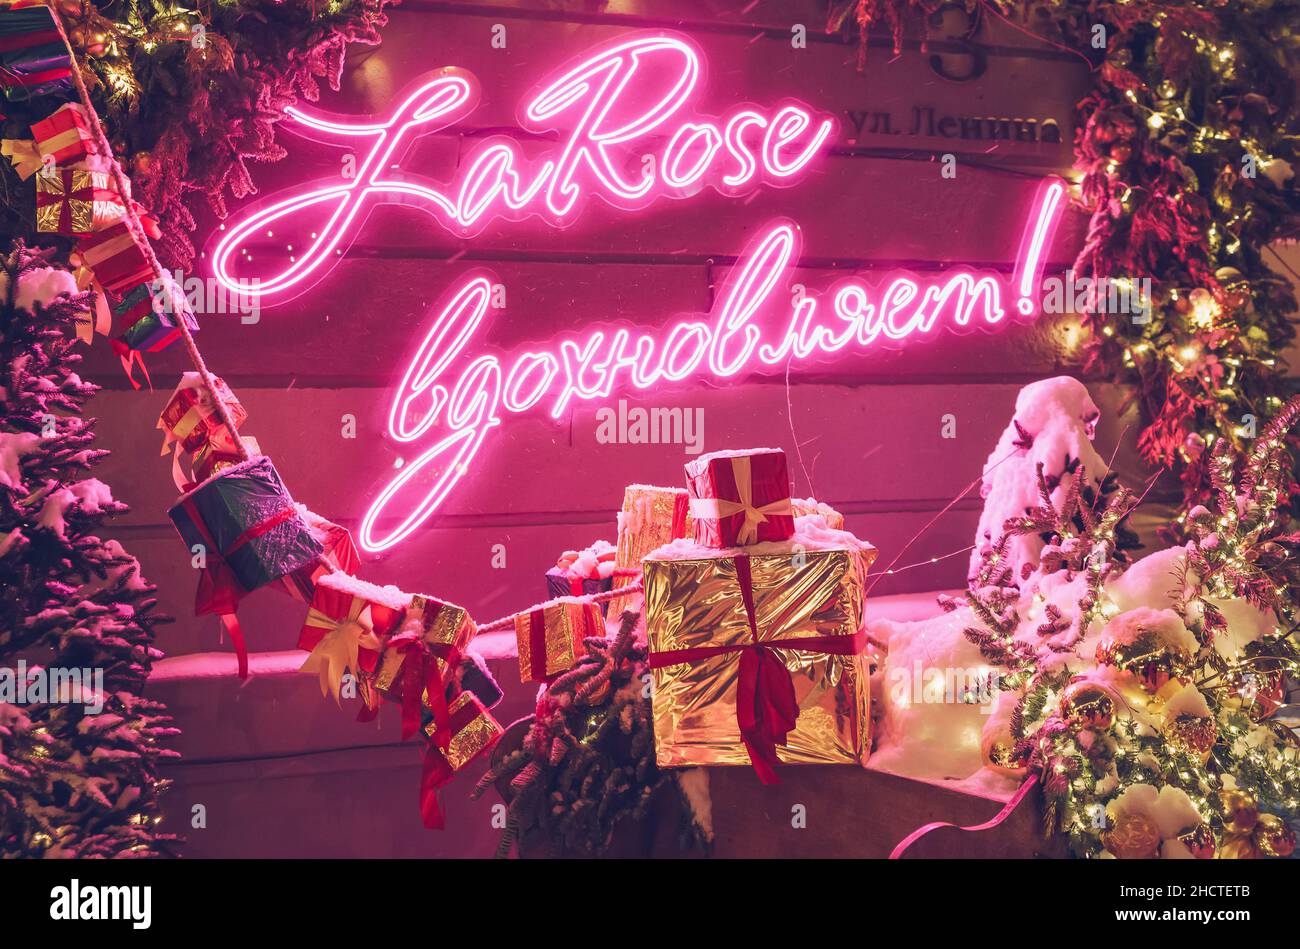 Nowosibirsk, Russland, 18. dezember 2021: Leuchtendes Neonschild in russischer Sprache mit der Bedeutung „La Rose (floral Shop Chain) inspires“ mit Weihnachtsdekorationen im Winter Stockfoto